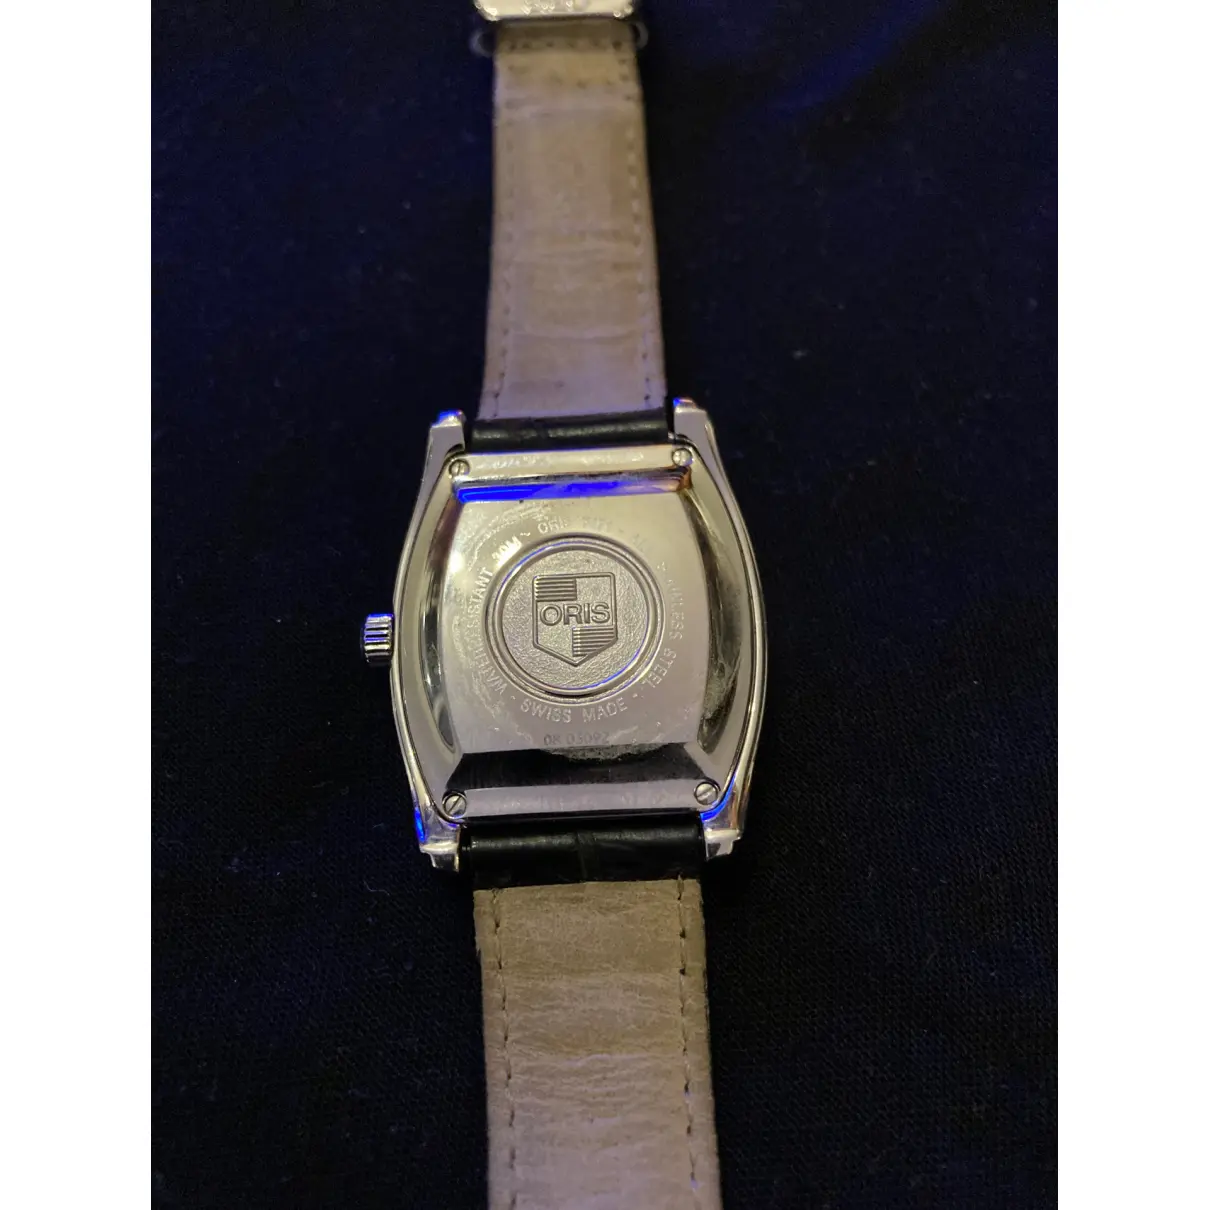 Buy Oris Silver watch online